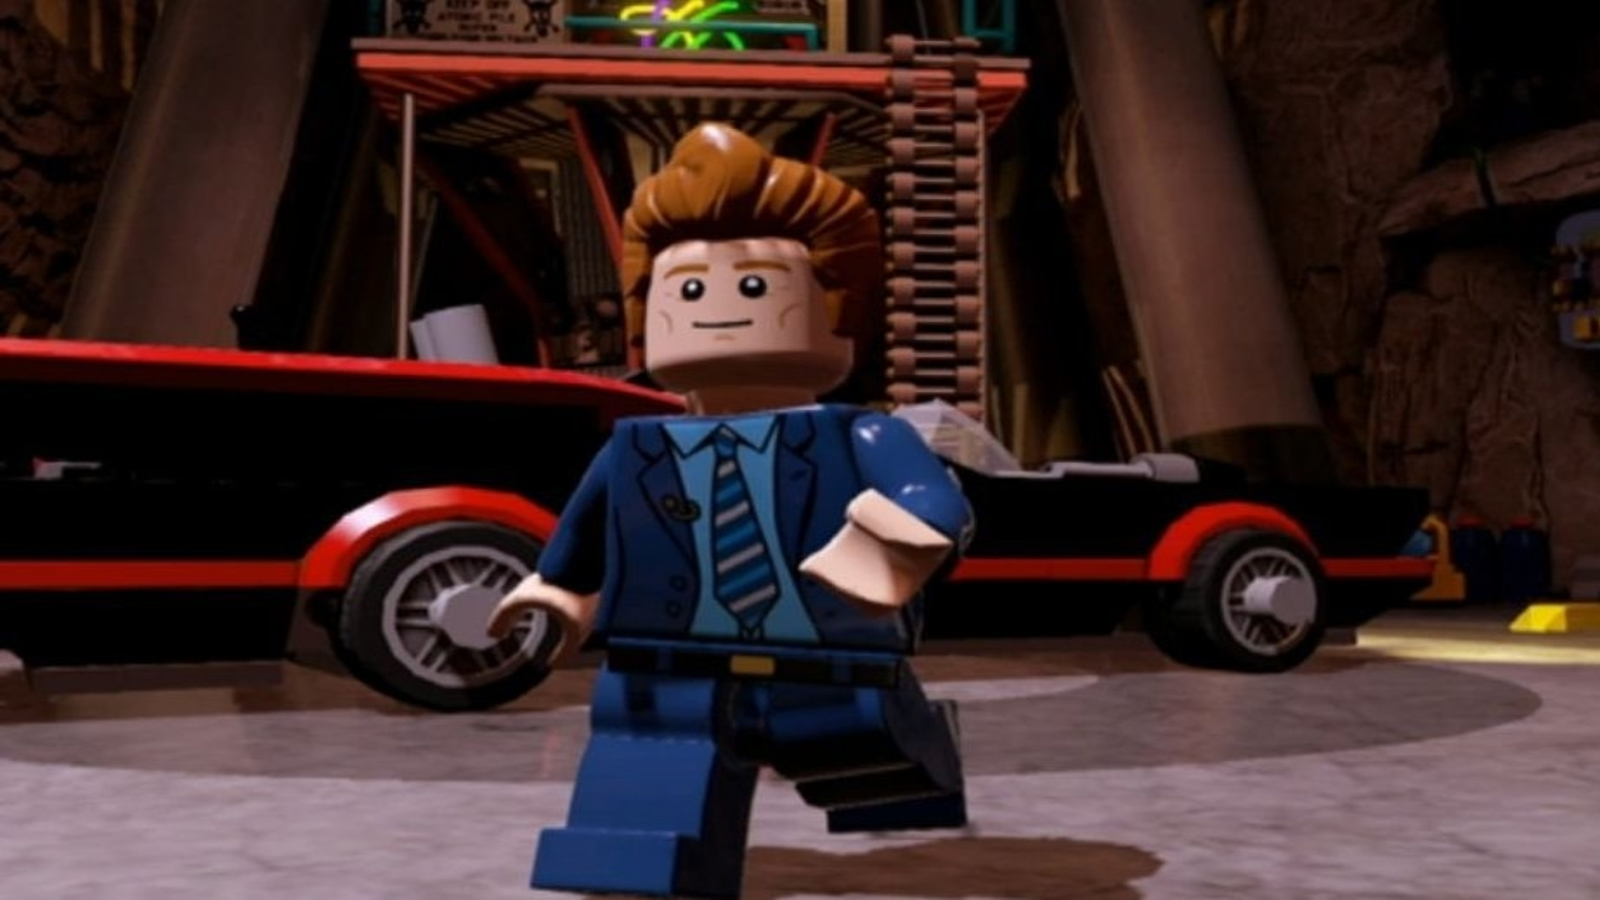 Confirmados más personajes para Lego Batman 3 